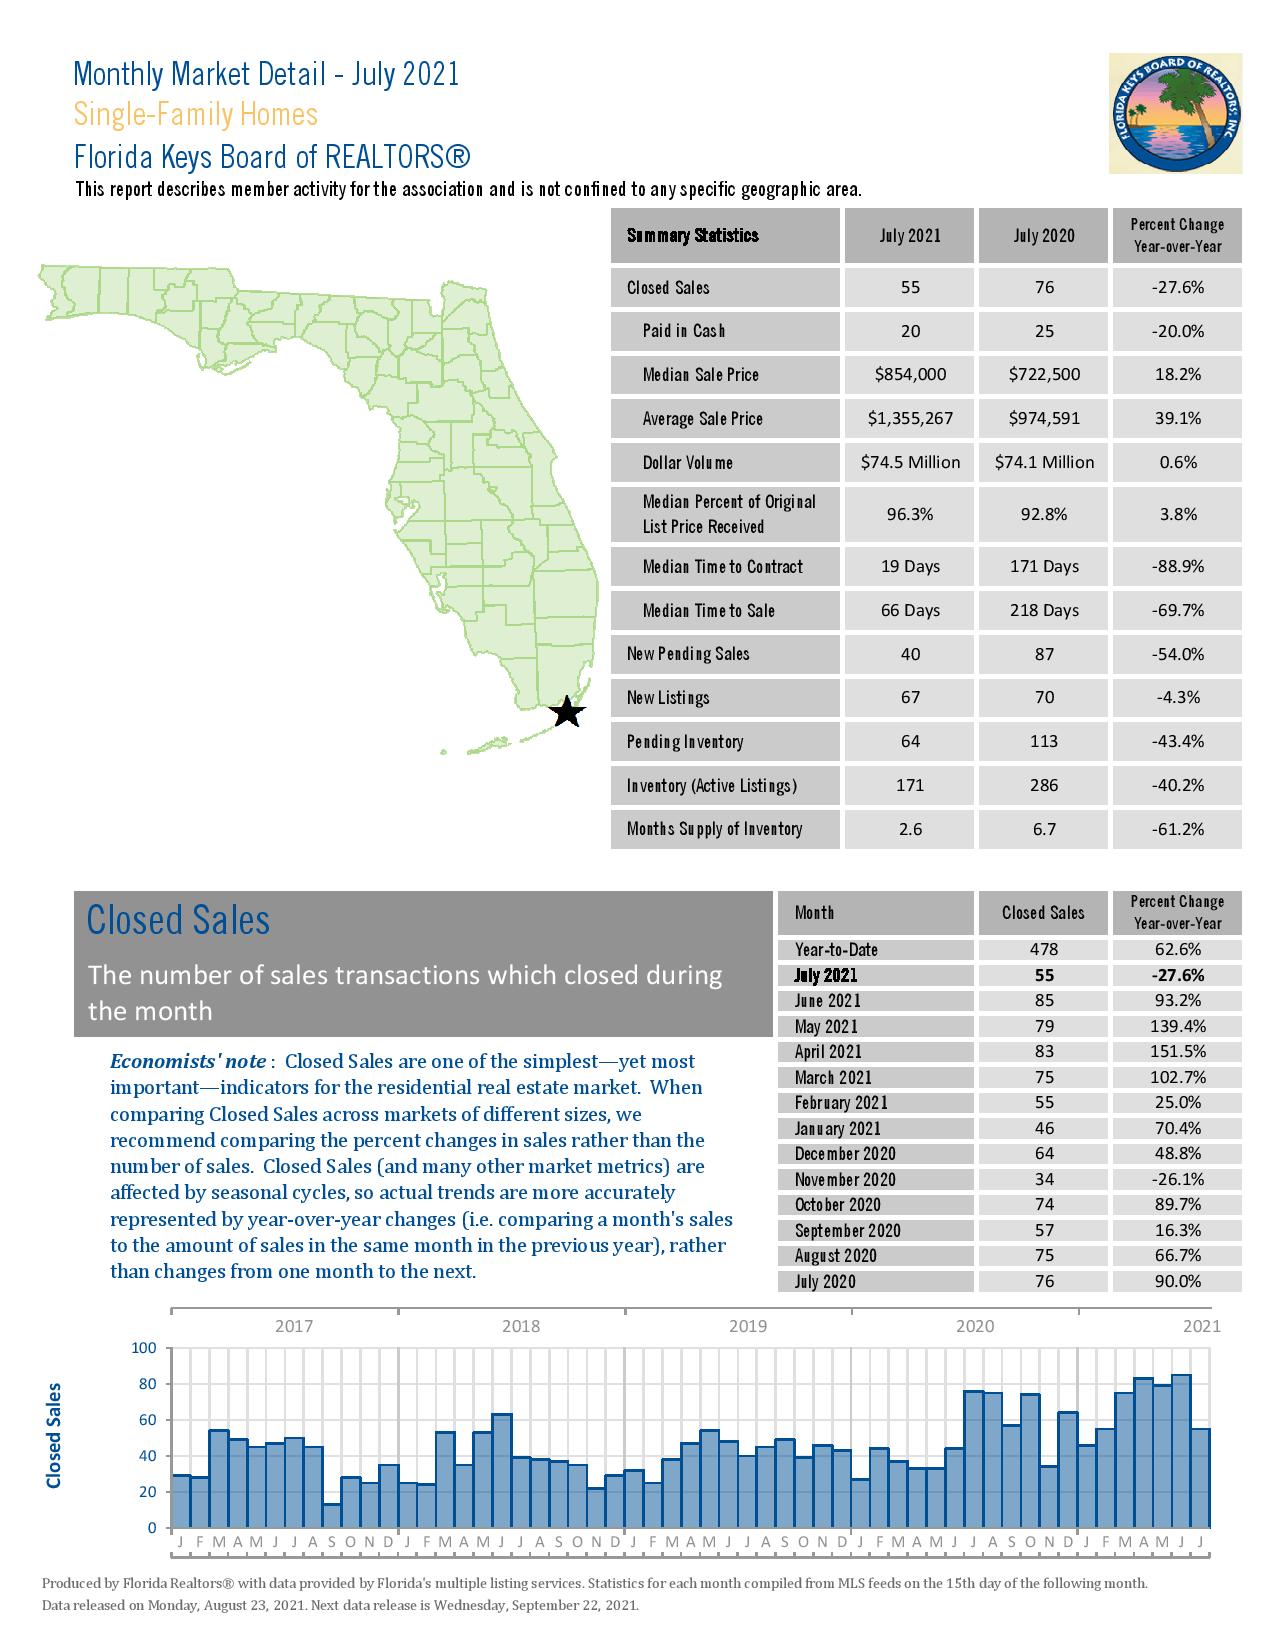 The Florida Keys Market Summary for July 2021